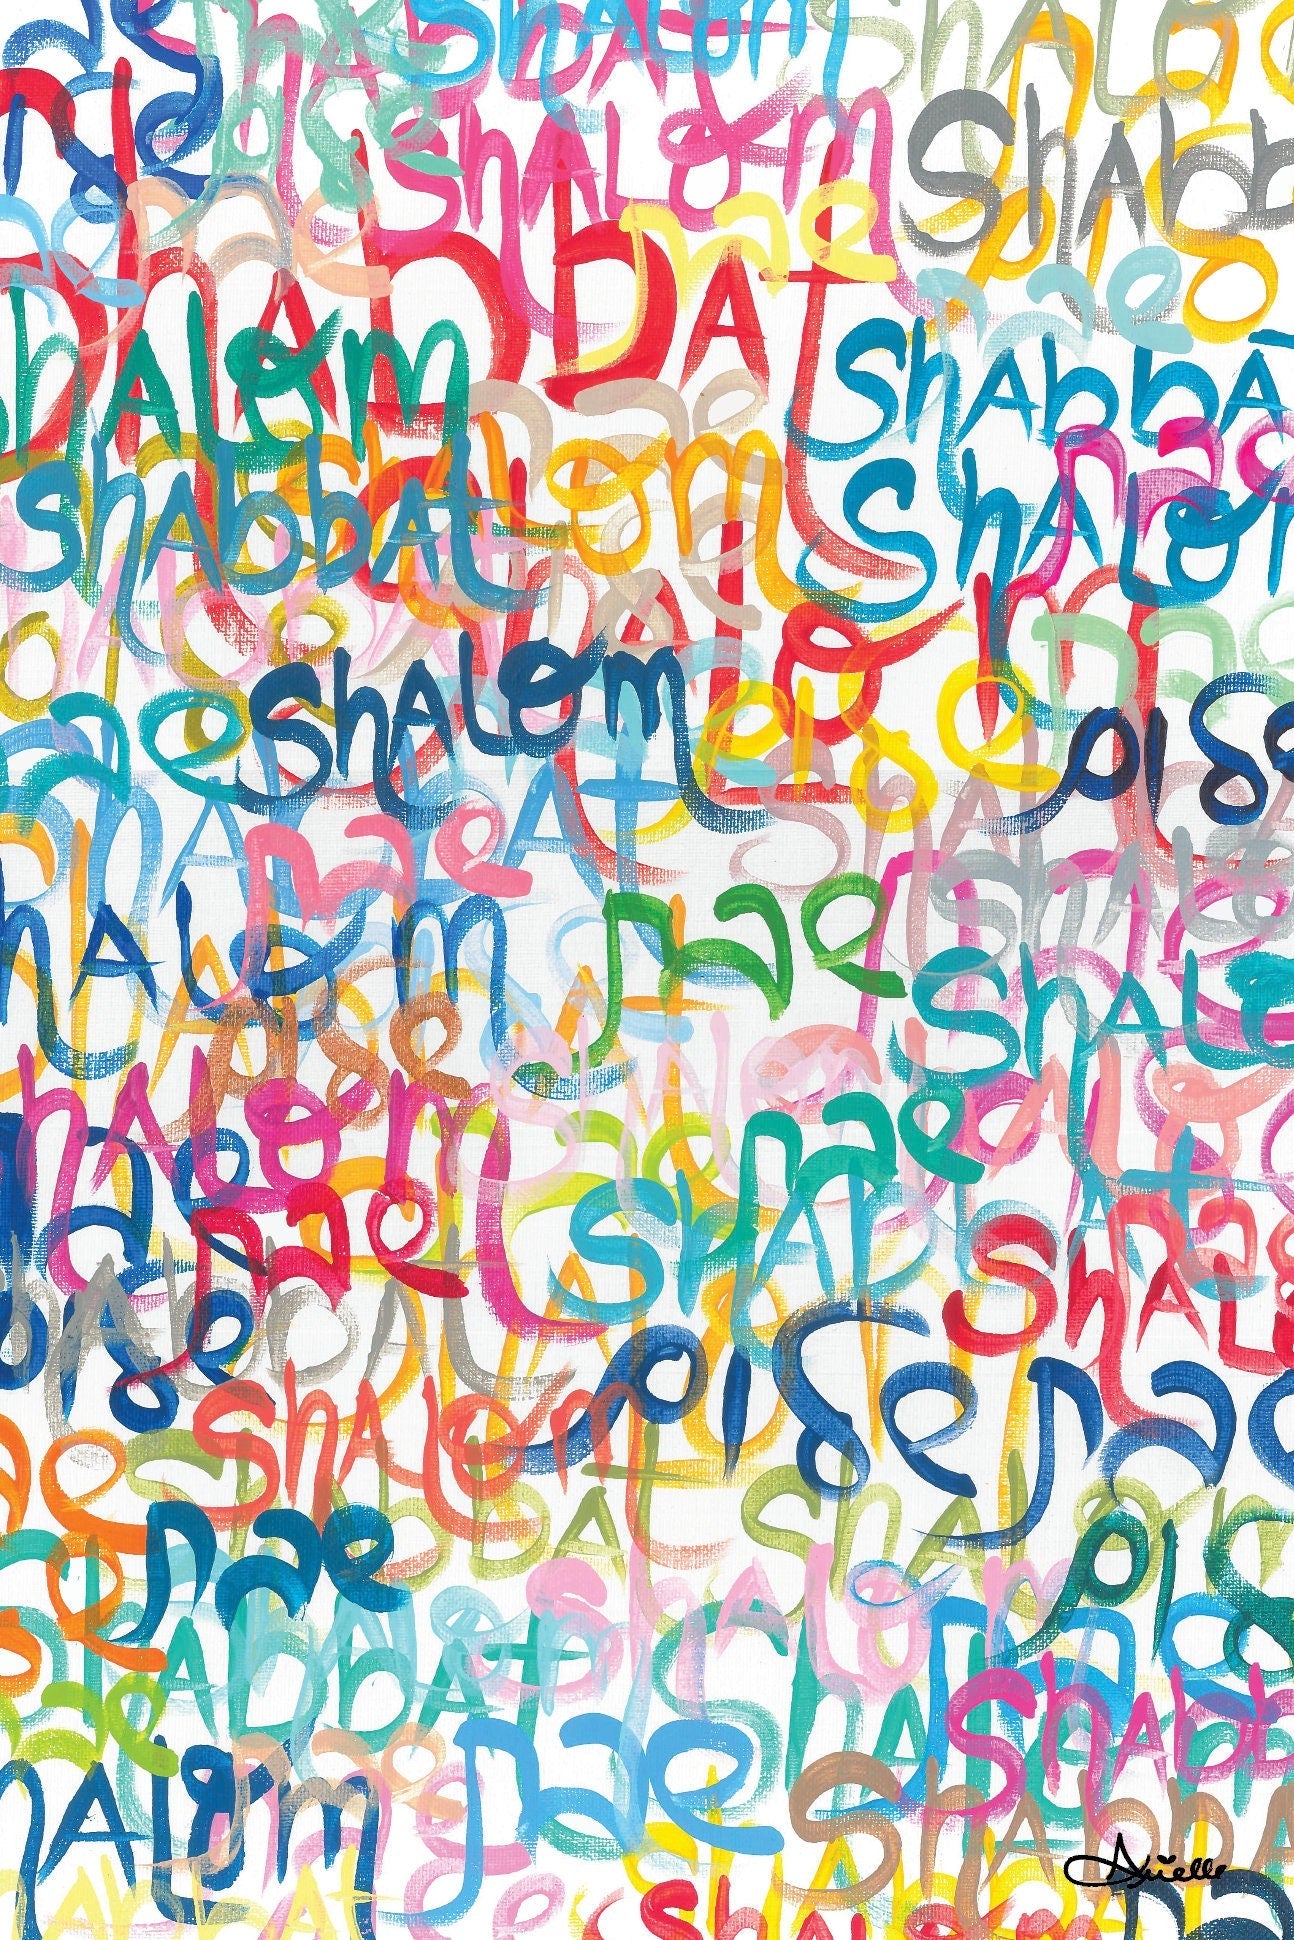 Shabbat Shalom Everywhere Giclee Art Print